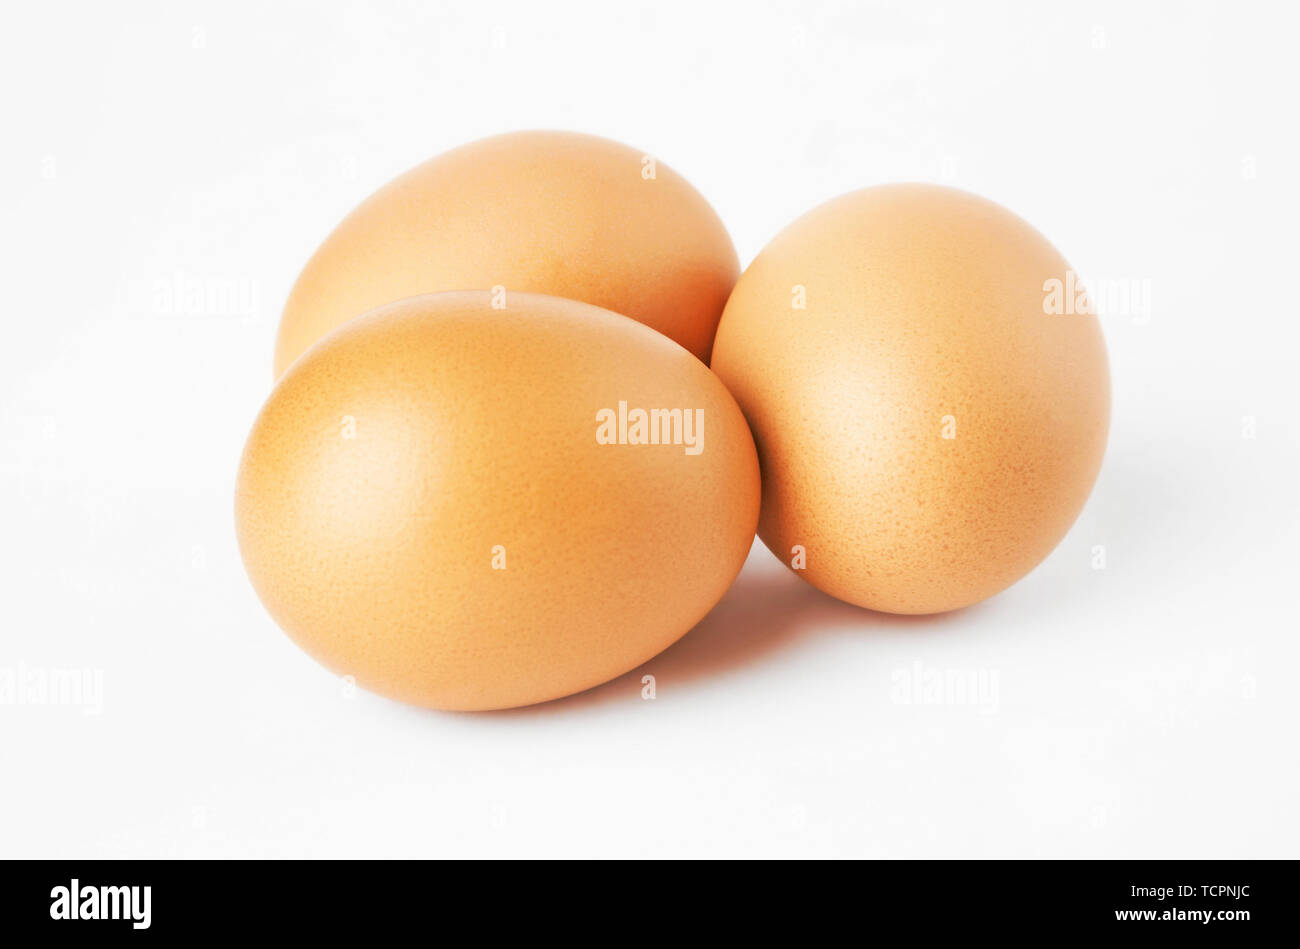 Включи 3 яйца. Три яйца. 3 Яйца фото. Картинка 2 яйца. Три яйца на столе.